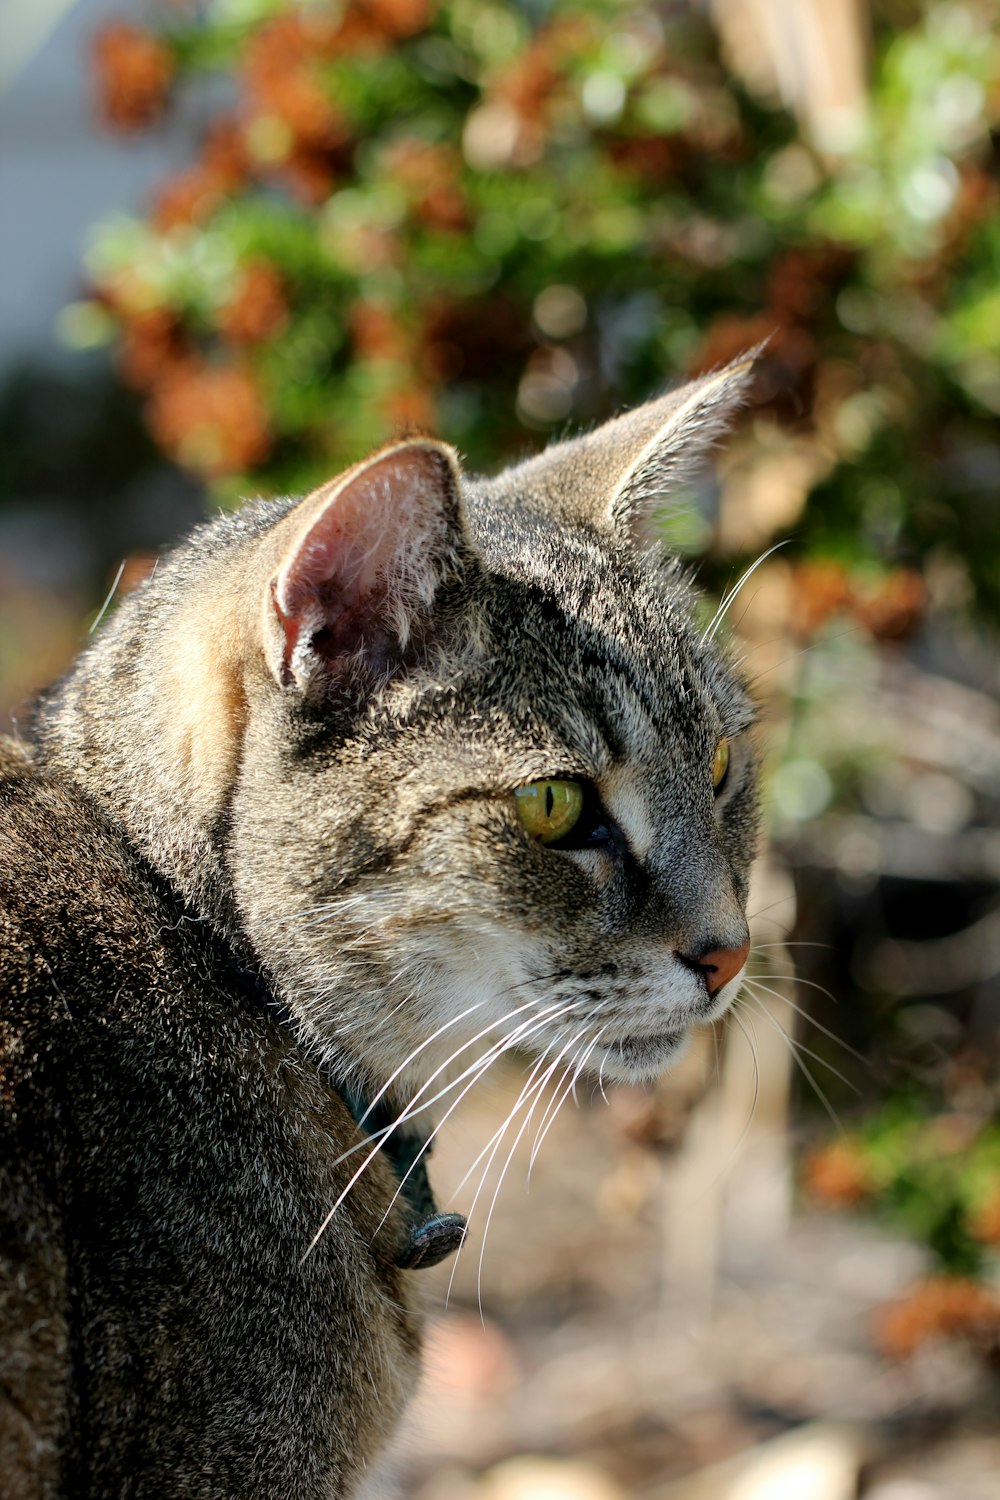 brown tabby cat in tilt shift lens